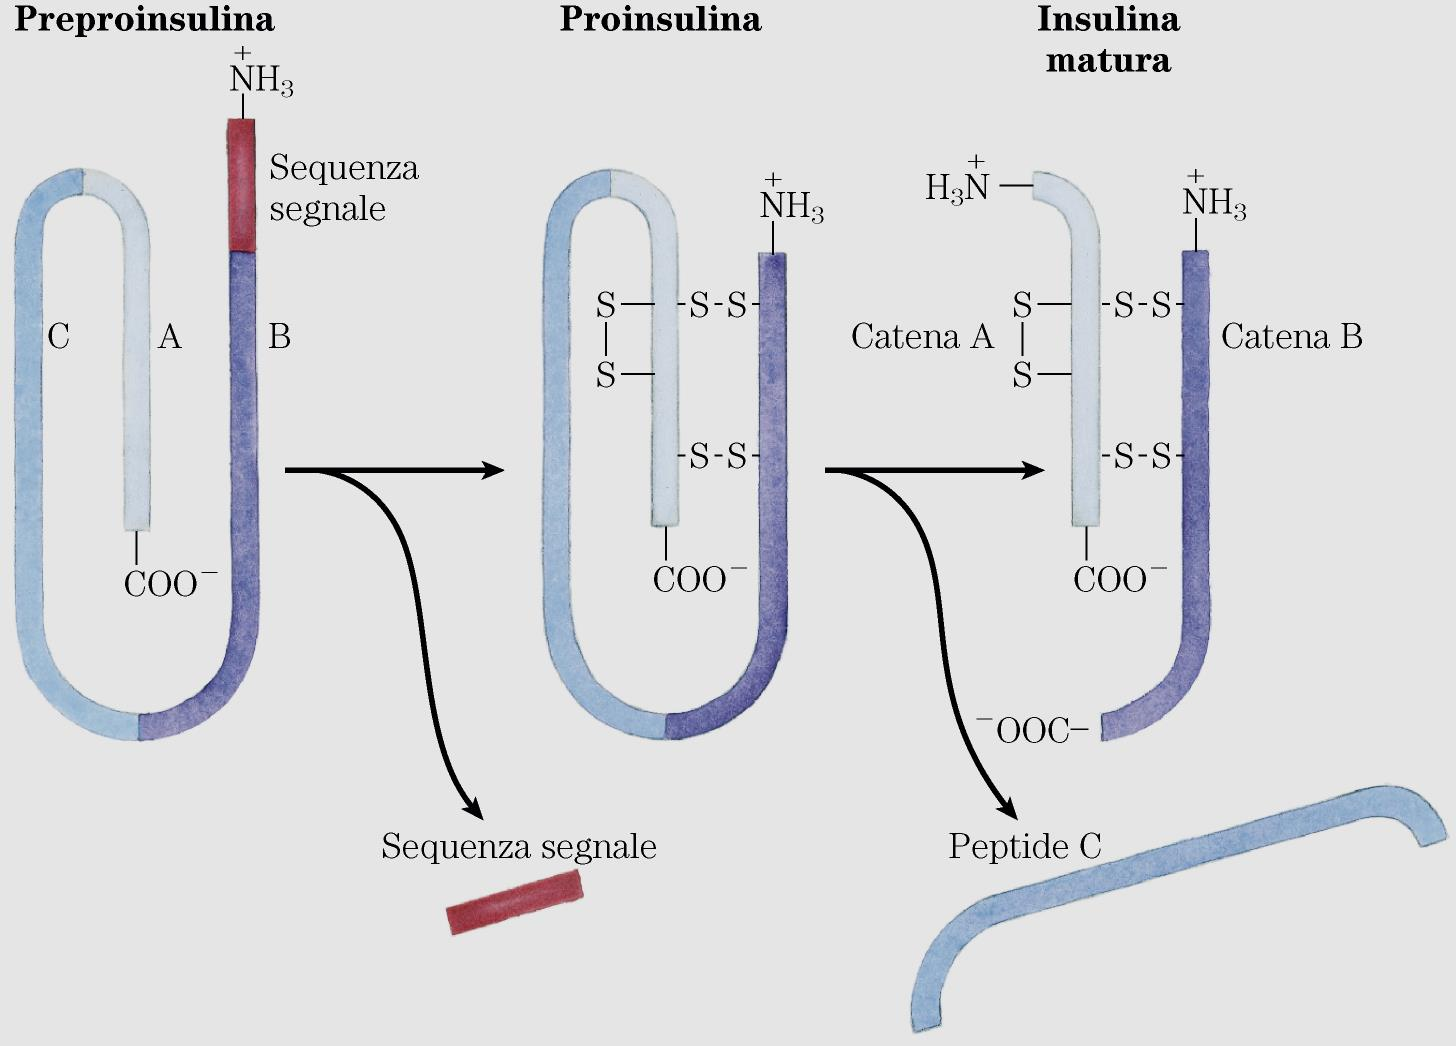 A B Taglio del peptide segnale: si ottiene la Proinsulina in cui le due porzioni N-terminale (sequenza B) e C-terminale (sequenza A) sono legate da 2 ponti